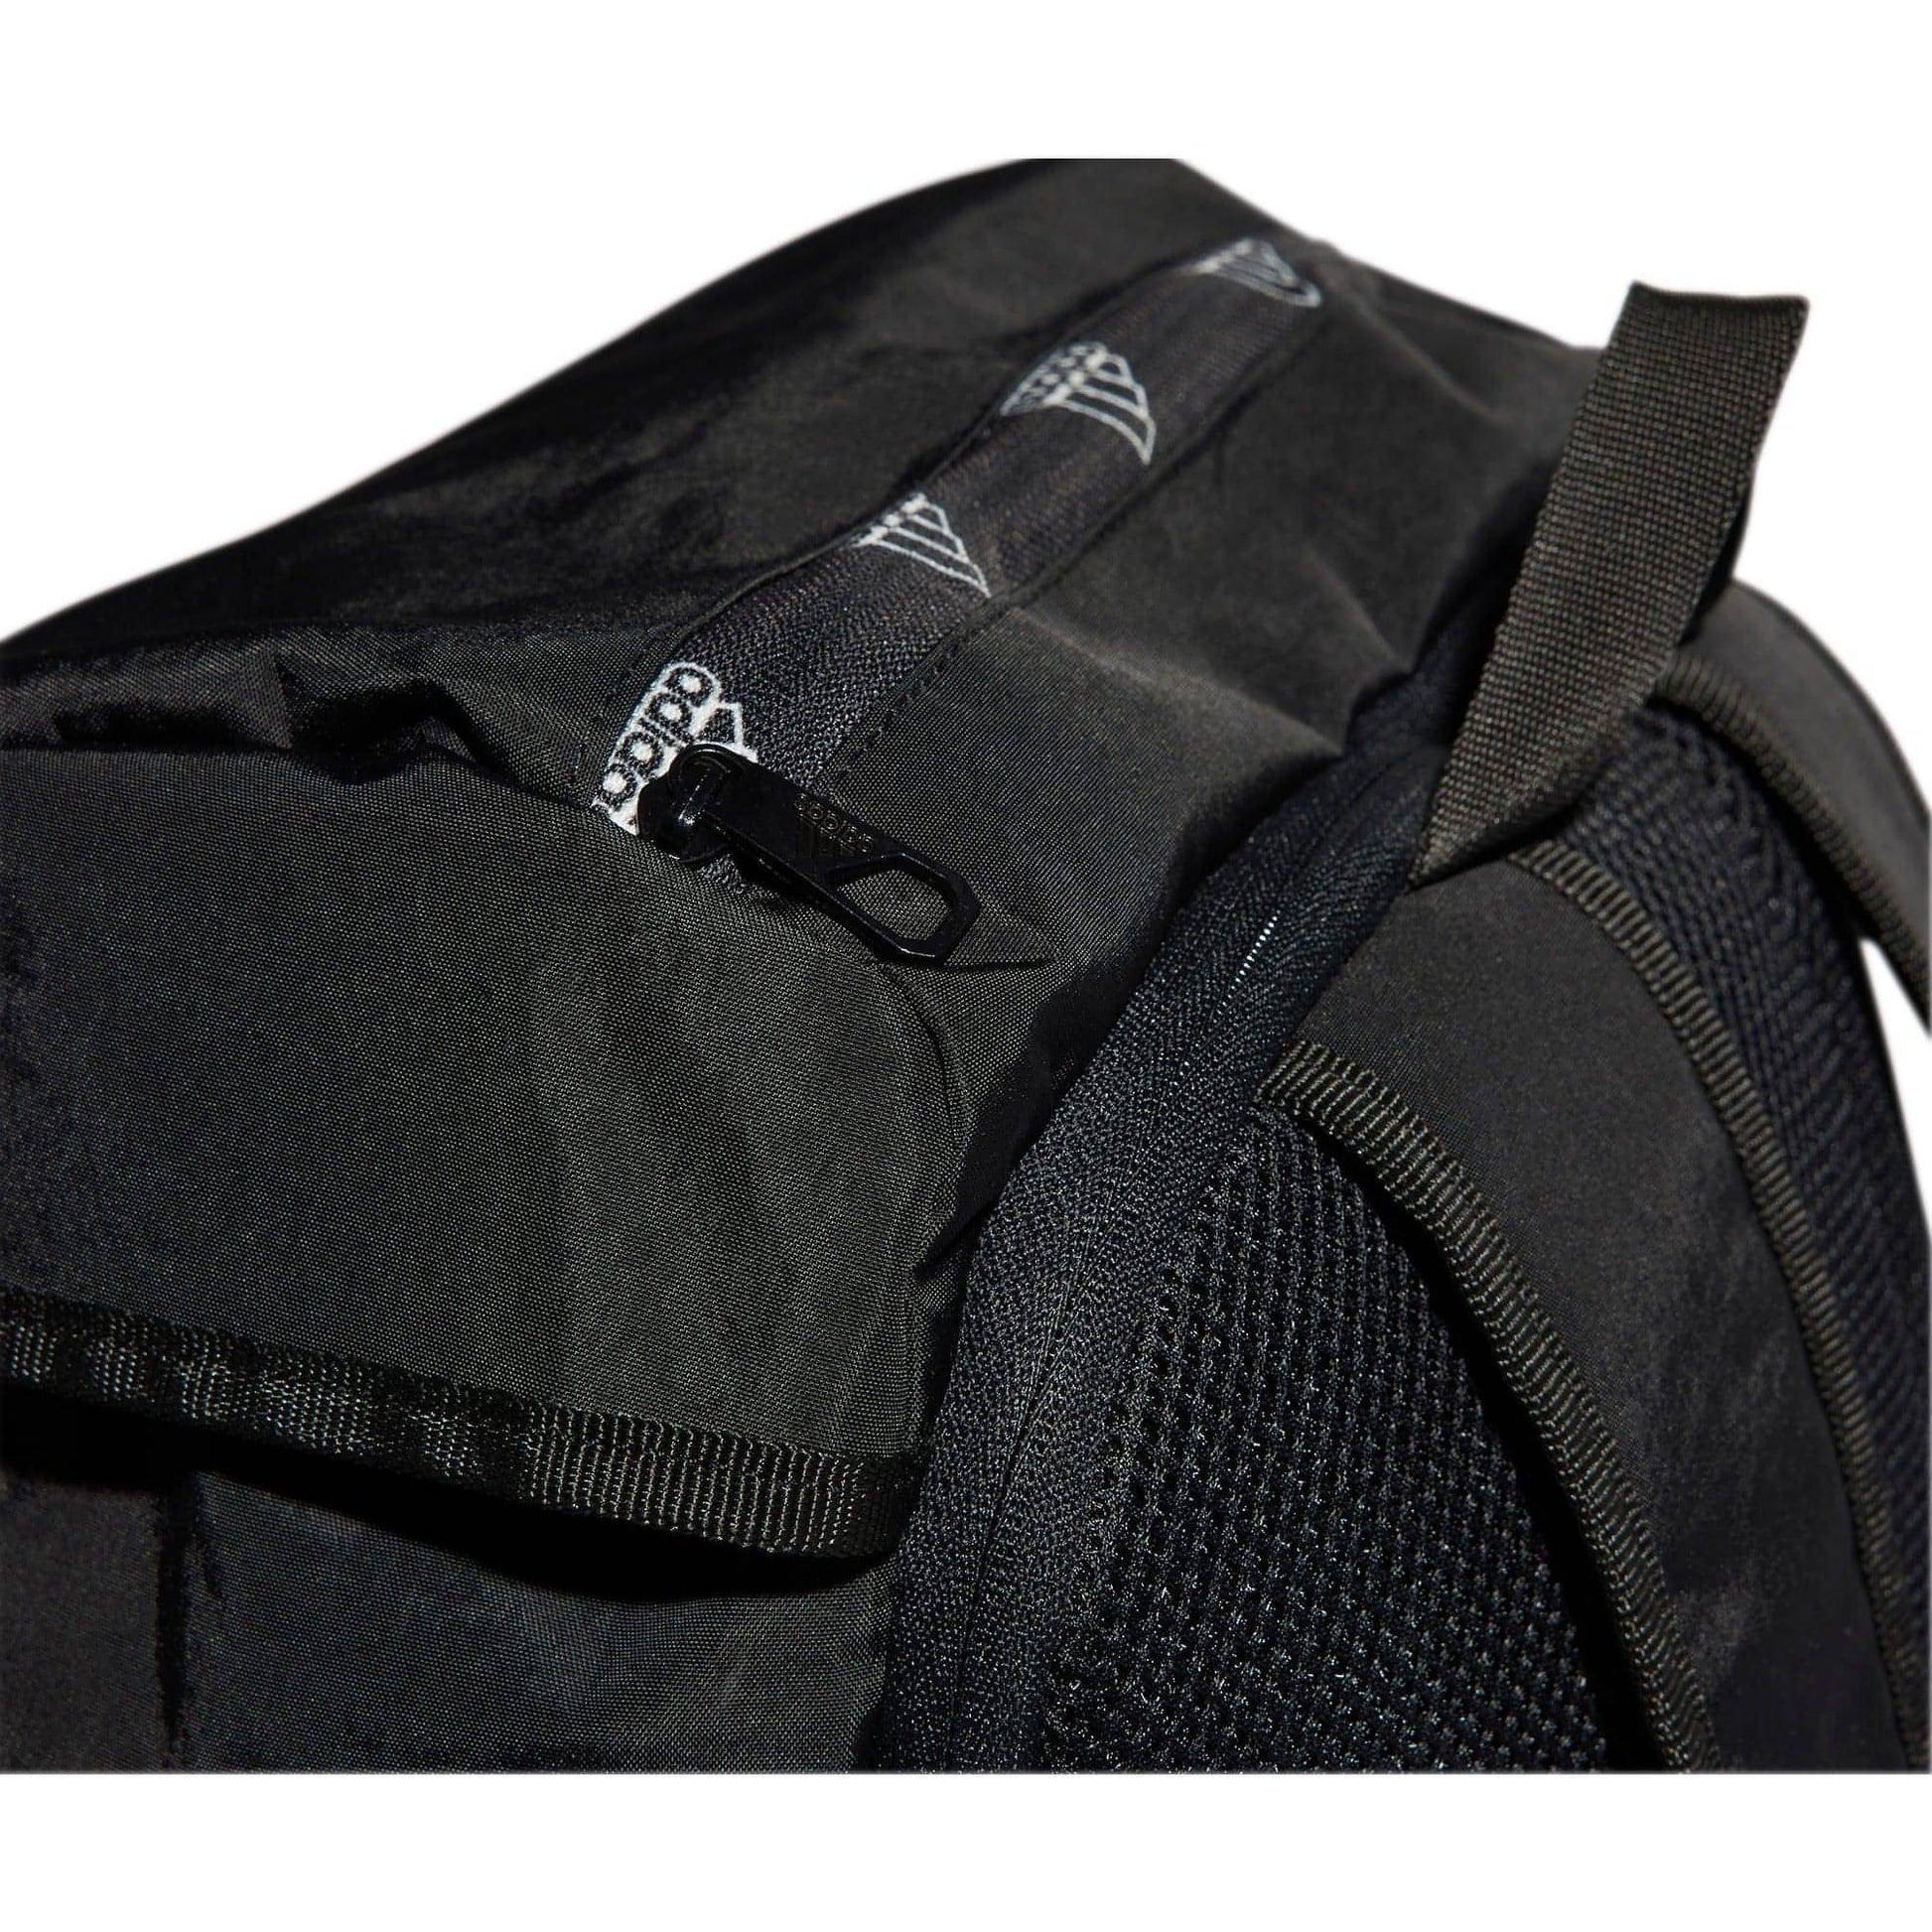 Adidas 4Athlts Camper Backpack Hc7269 Details